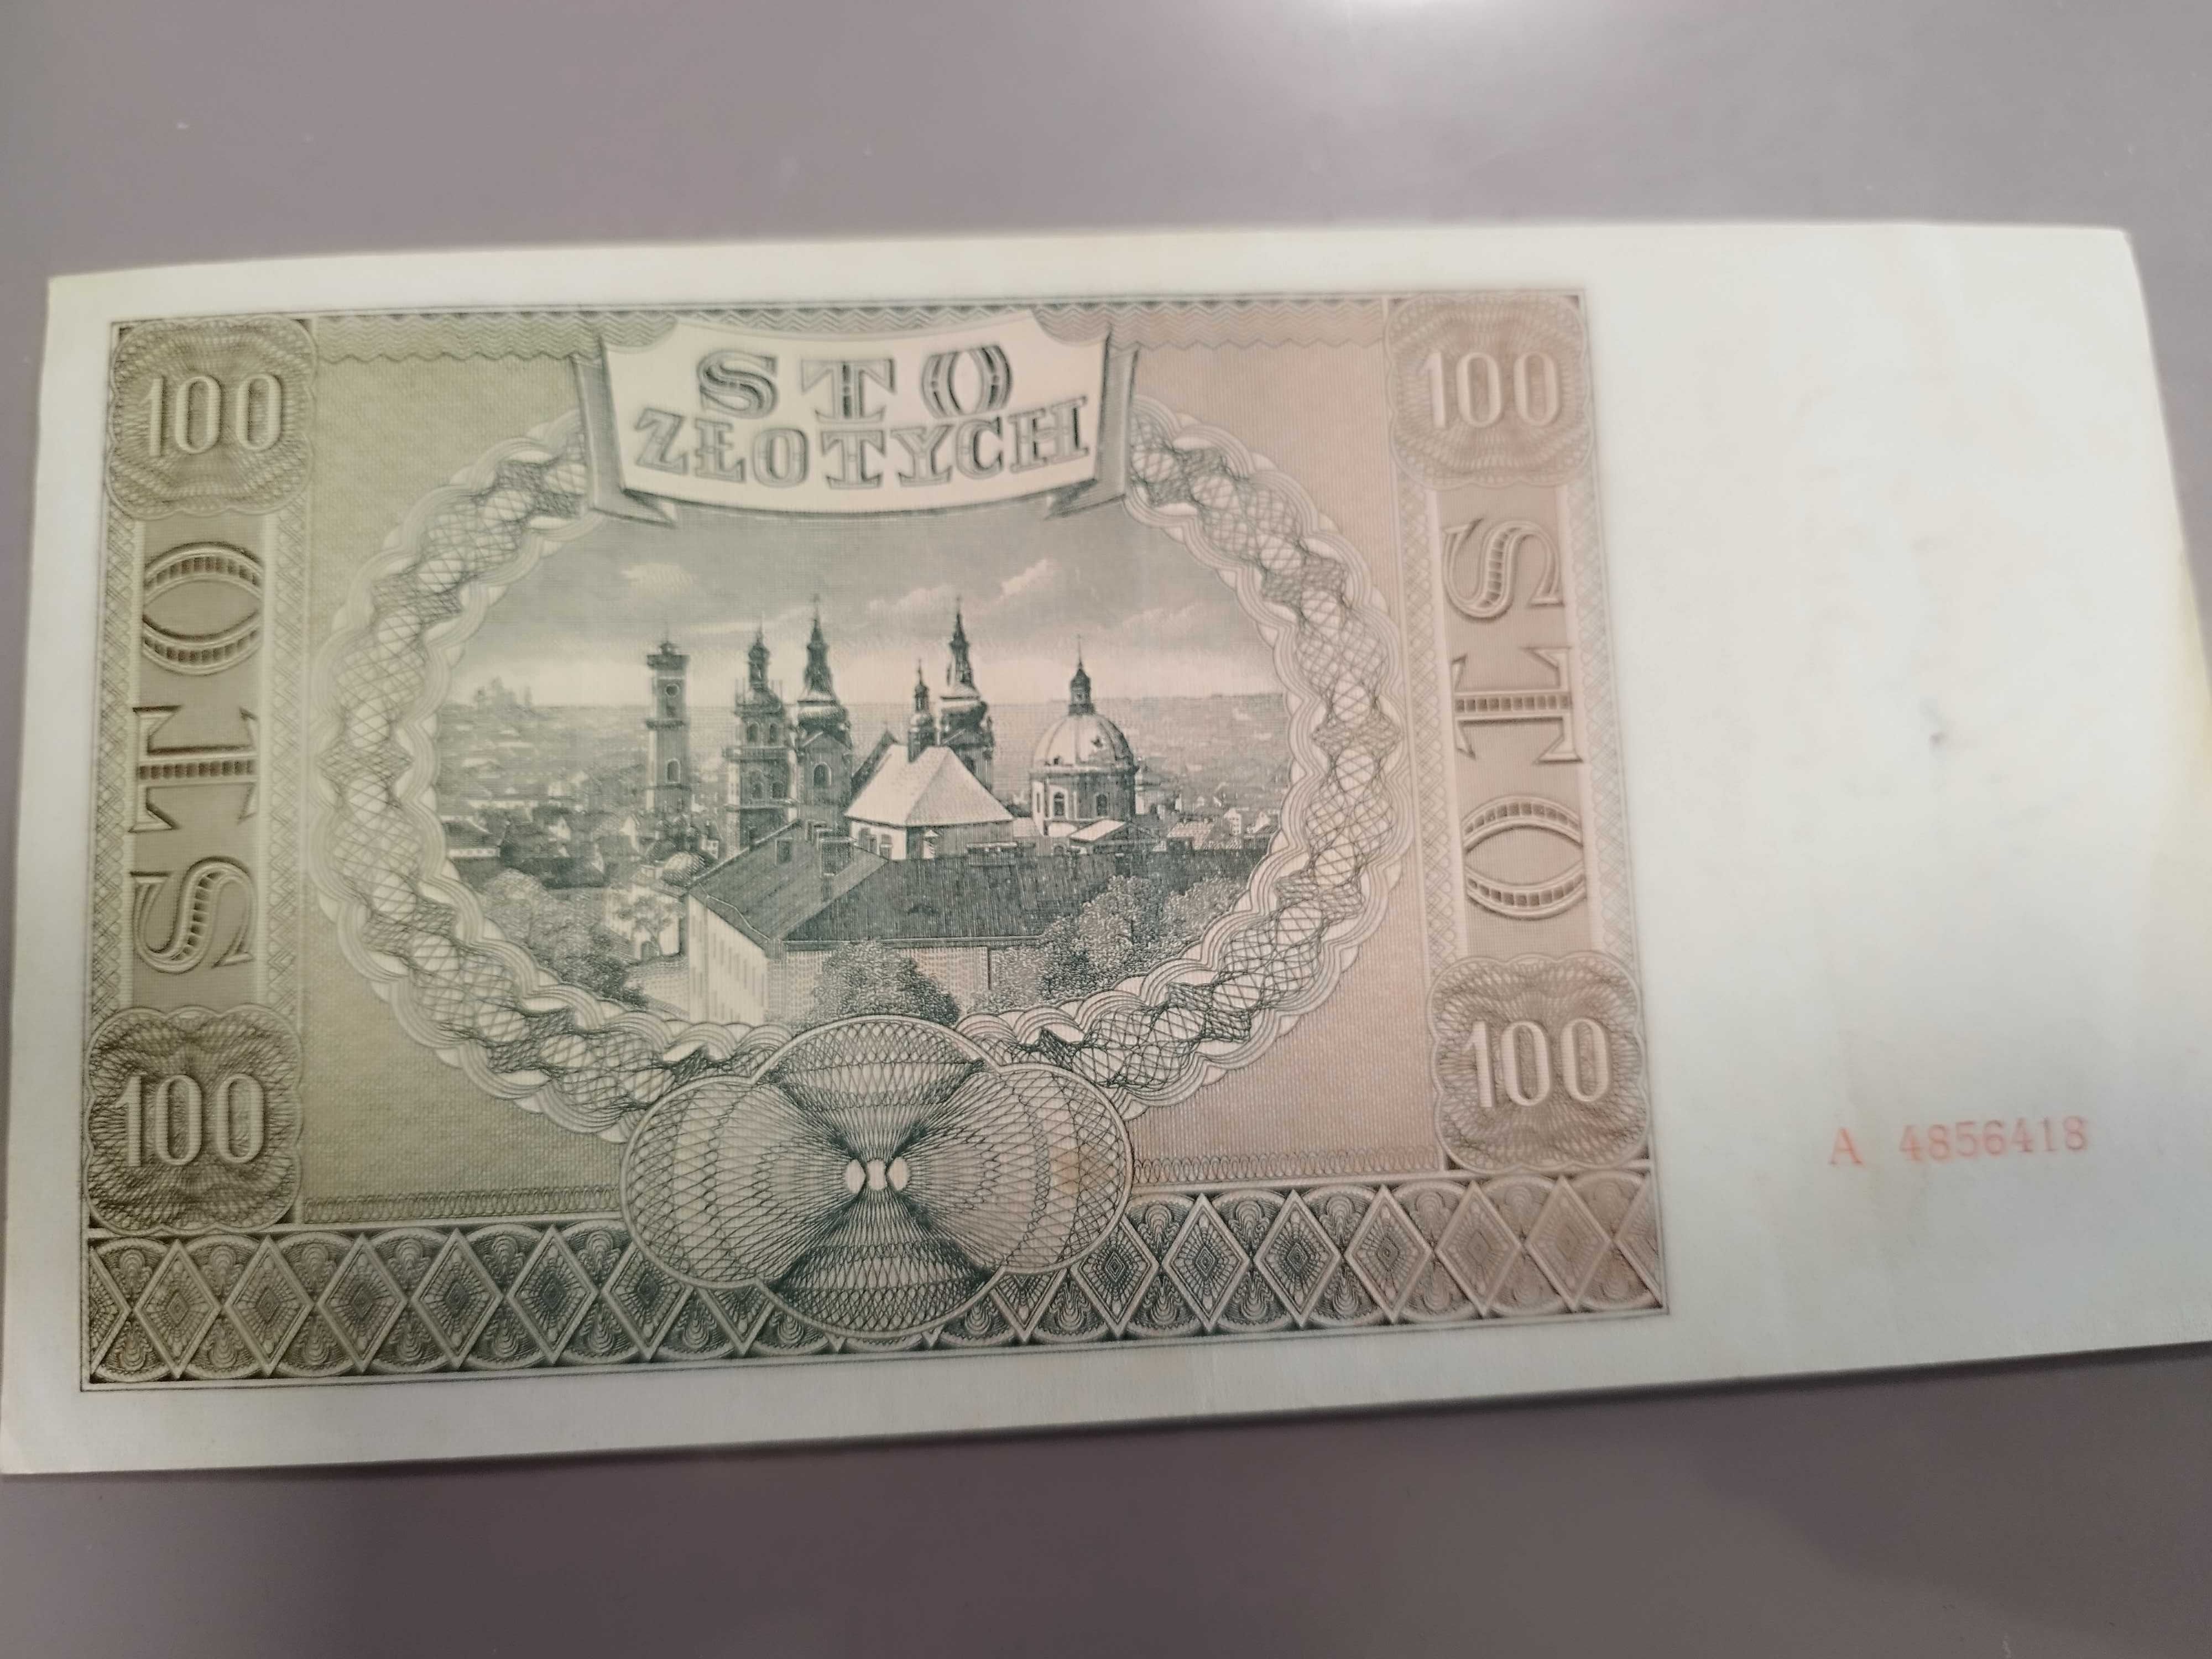 Banknot o nominale 100 zł z 1941 roku sprzedam.